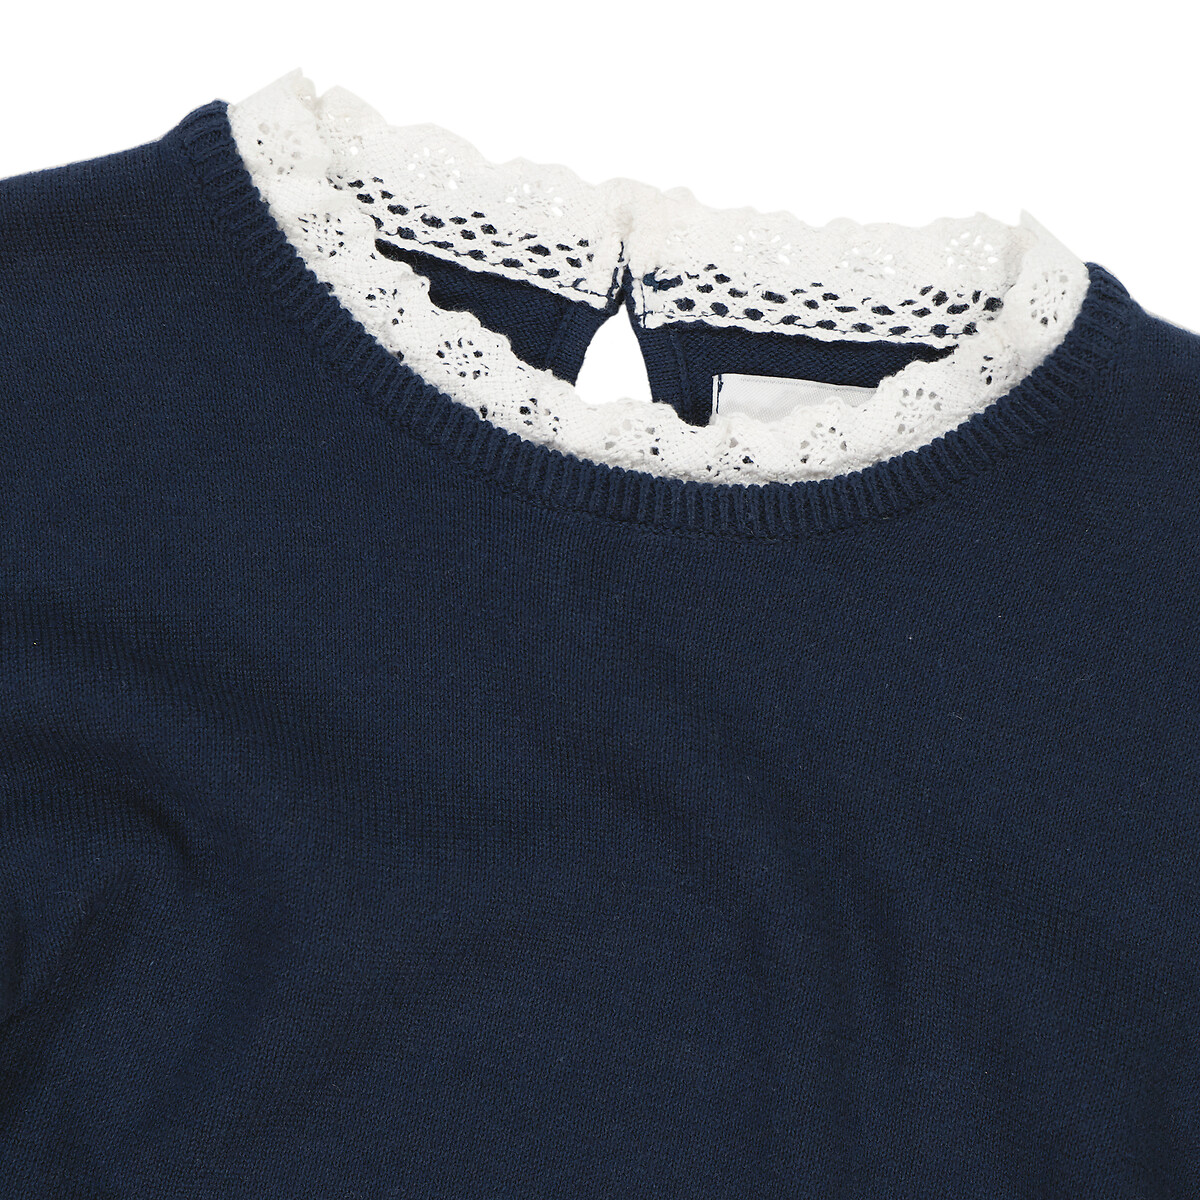 Пуловер Из тонкого трикотажа вырез с эффектом два в одном 5 лет - 108 см синий LaRedoute, размер 5 лет - 108 см - фото 5